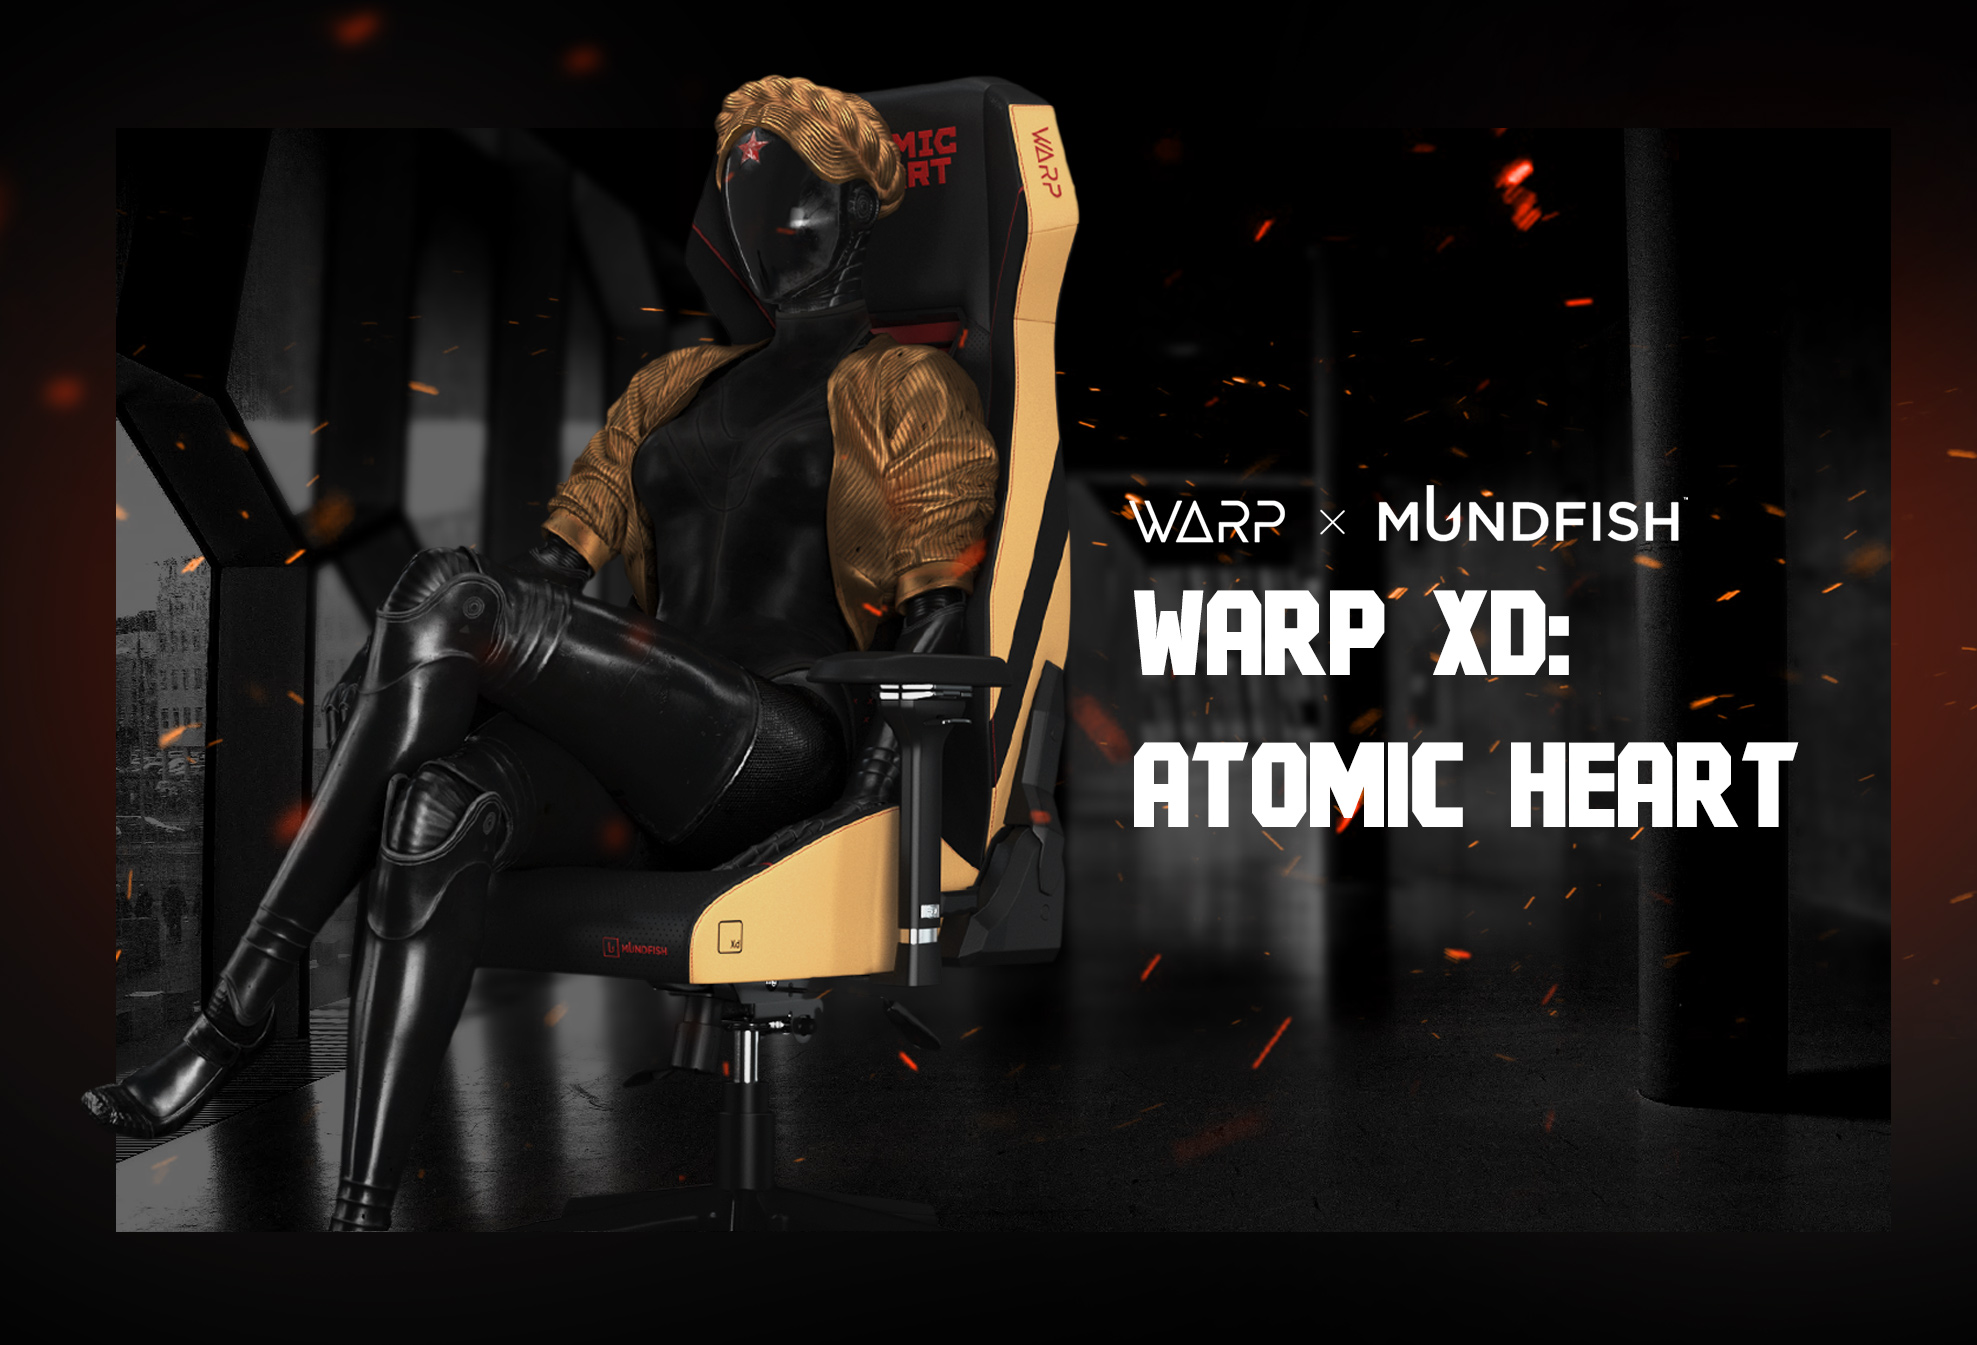 ВАРП и Mundfish представили геймерское кресло Atomic Heart Xd